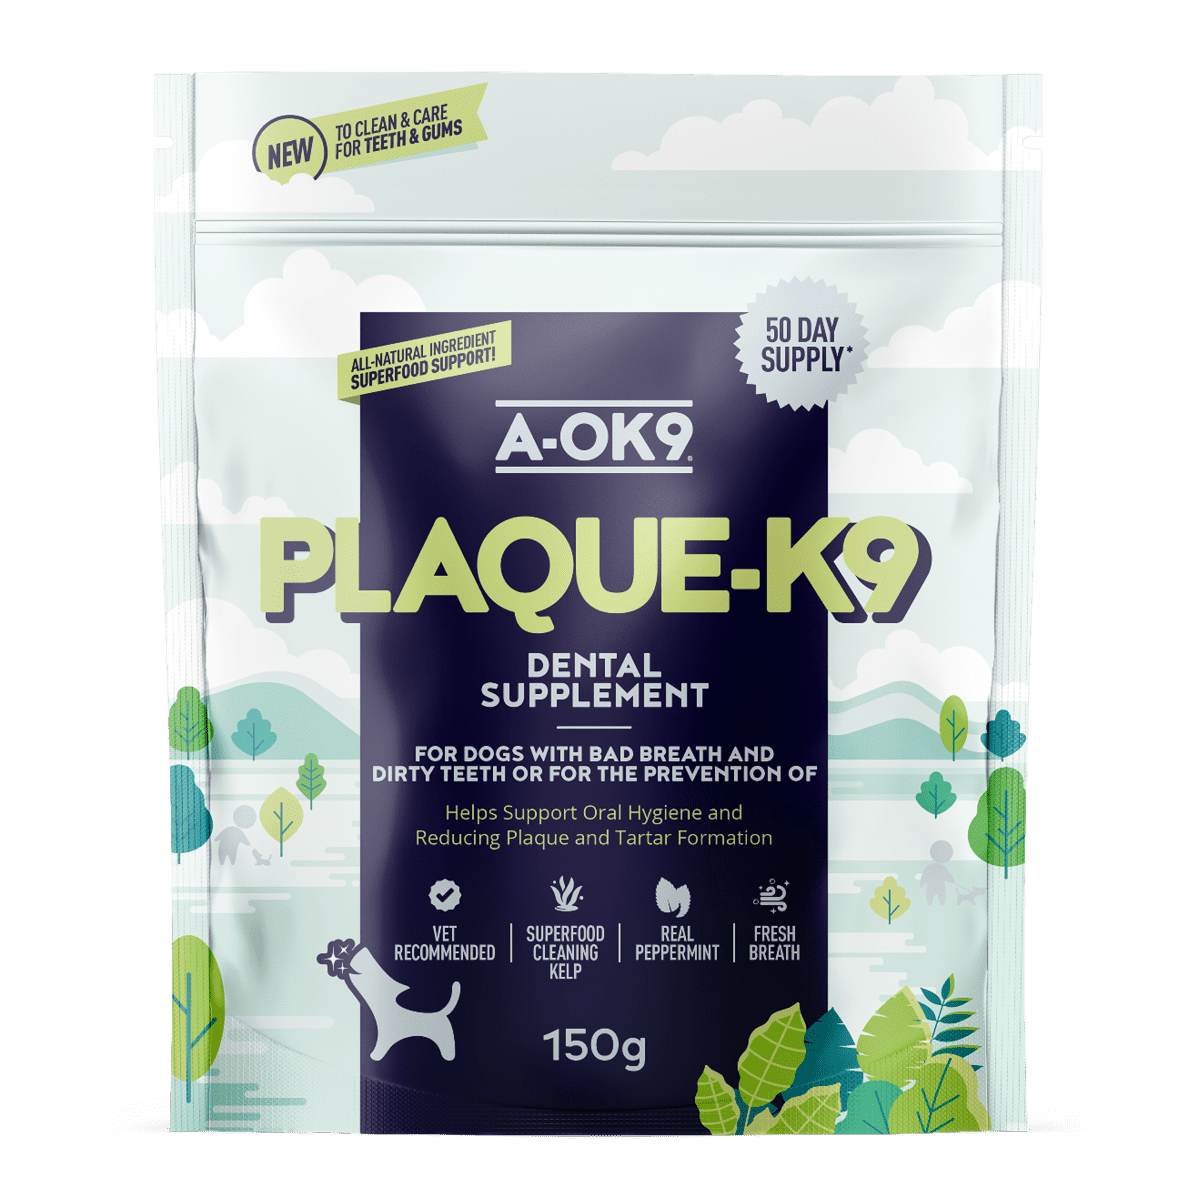 Plaque-K9 supplement pouch